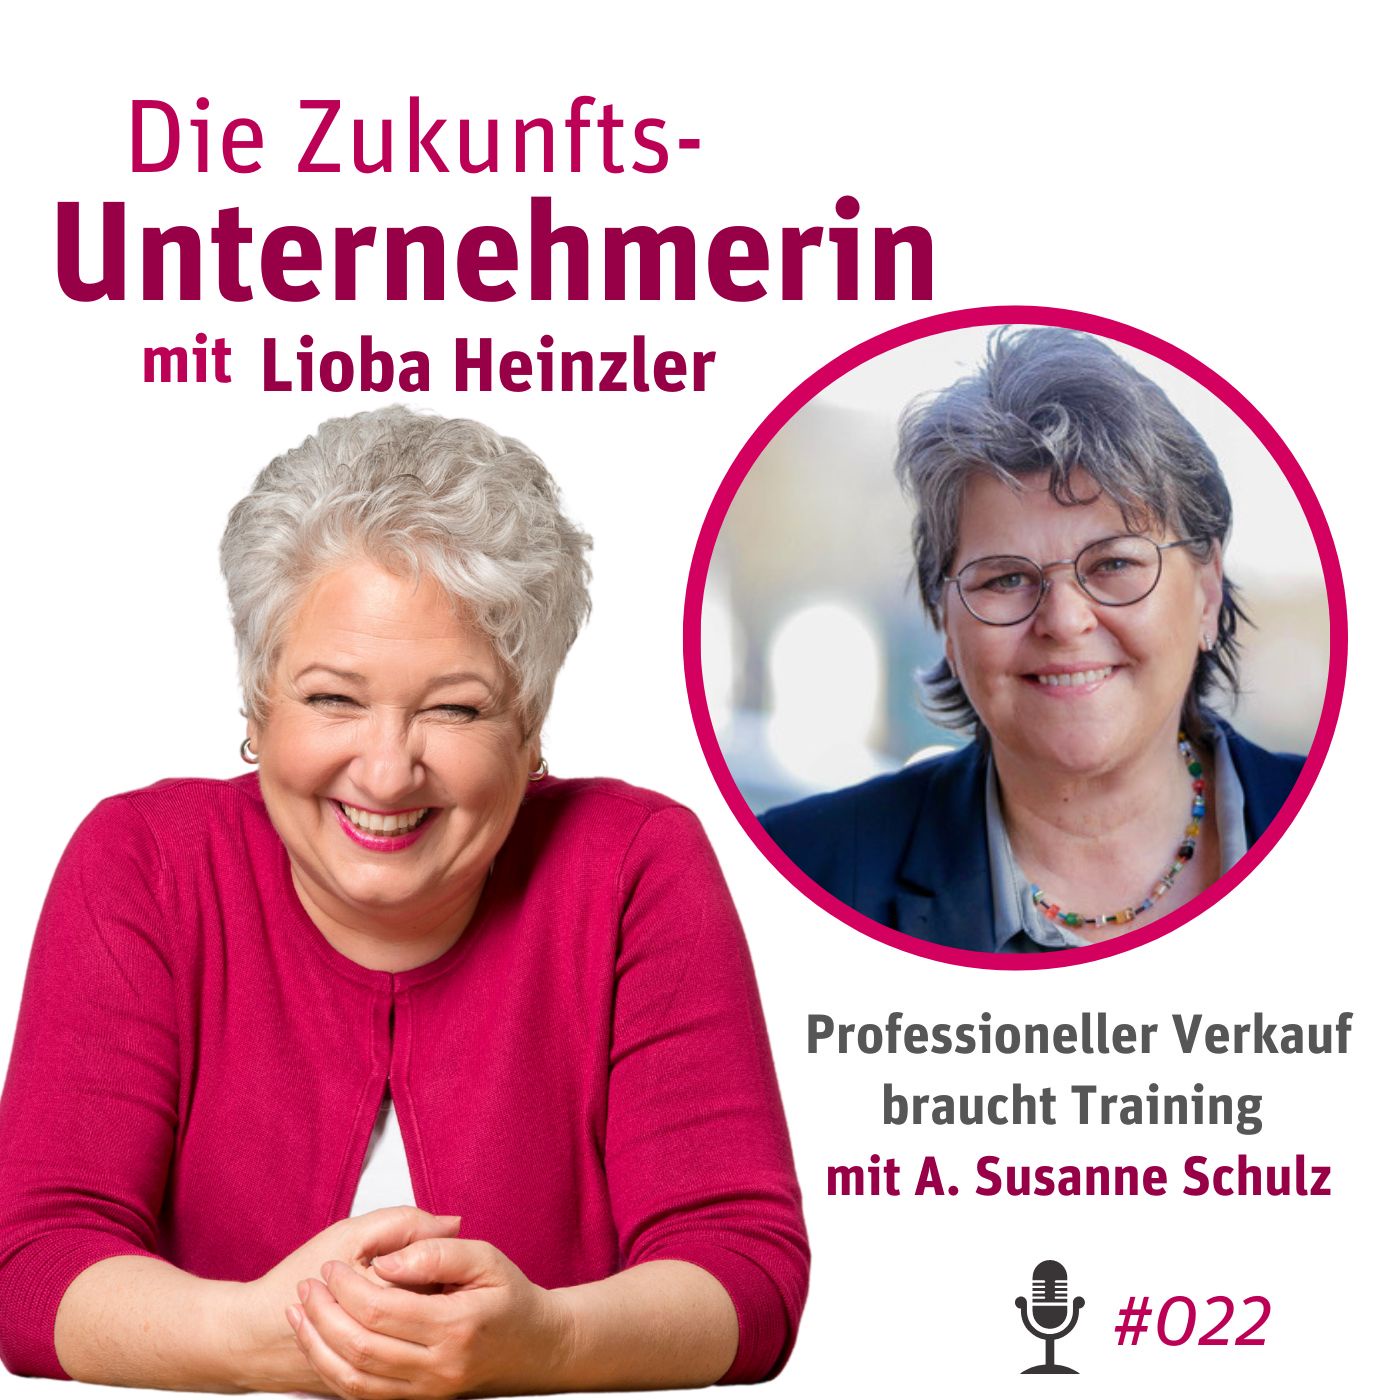 Professioneller Verkauf braucht Training - mit Antje Susanne Schulz